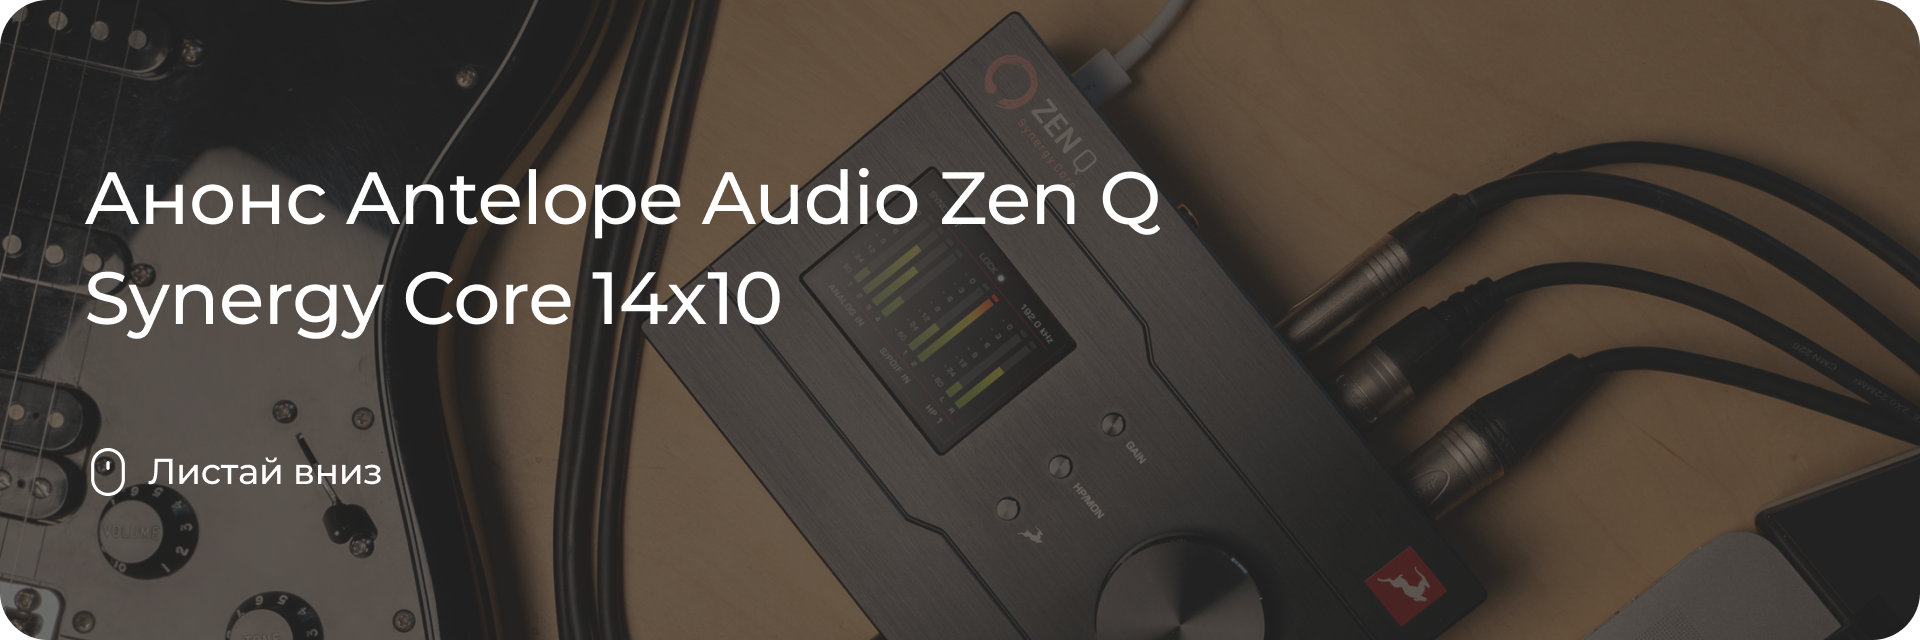 Анонс Antelope Audio Zen Q Synergy Core